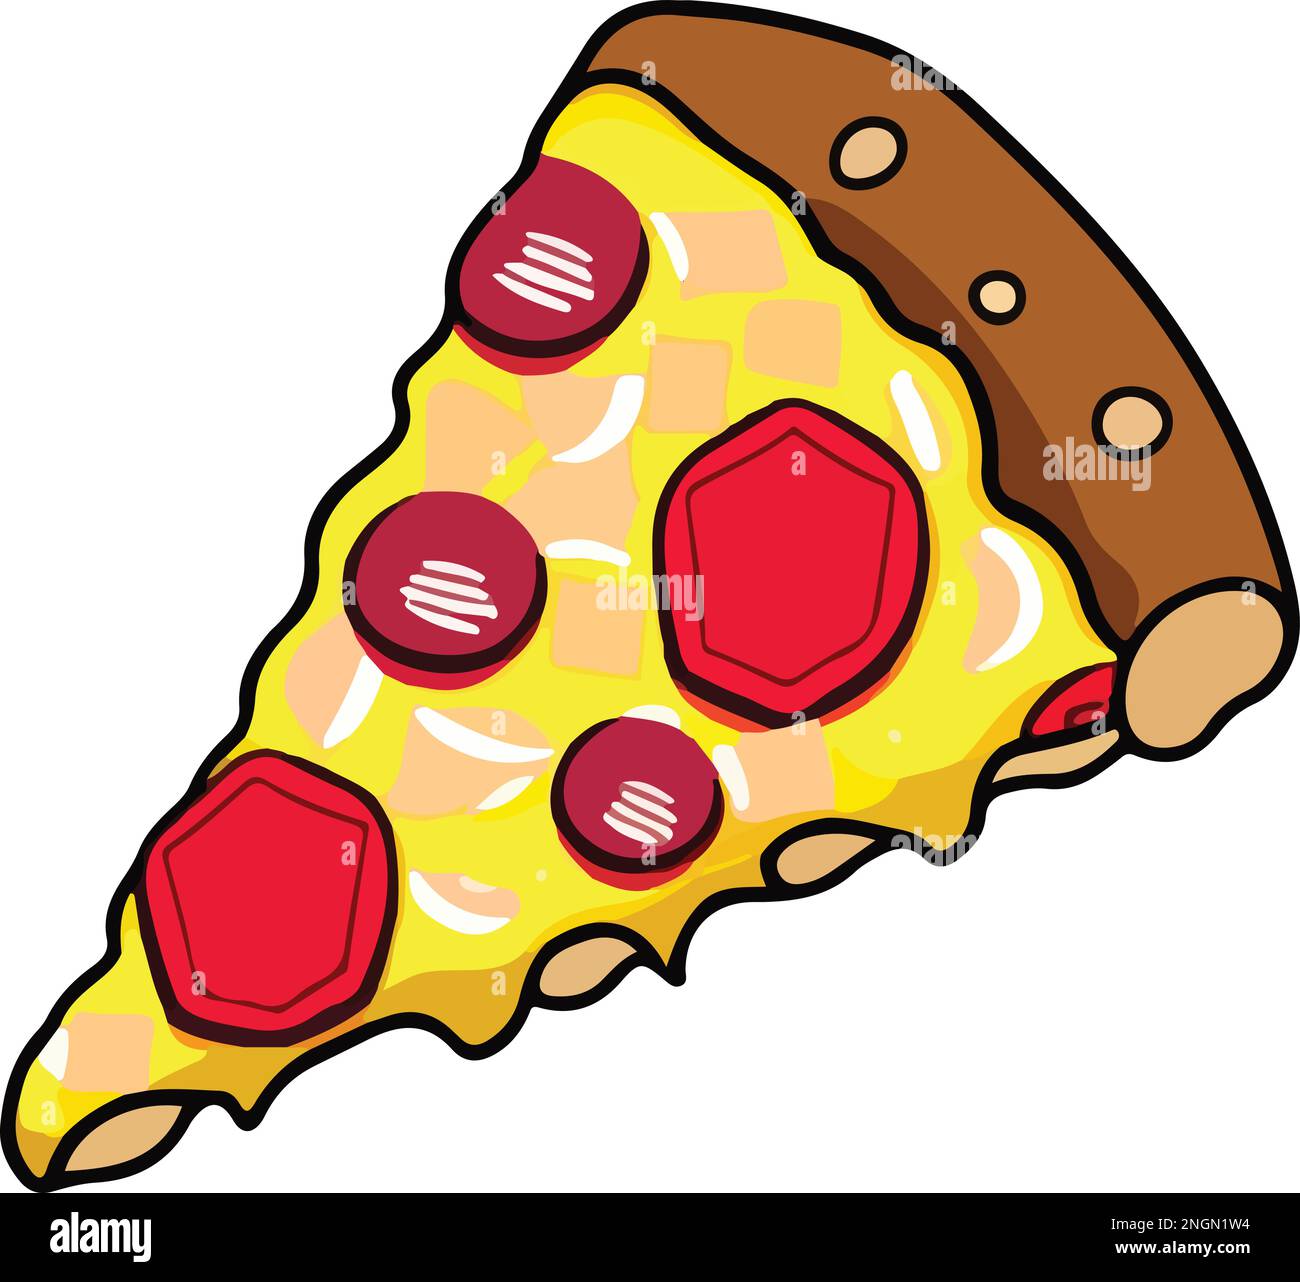 Illustrazione di una deliziosa fetta di pizza di Pepperoni Illustrazione Vettoriale